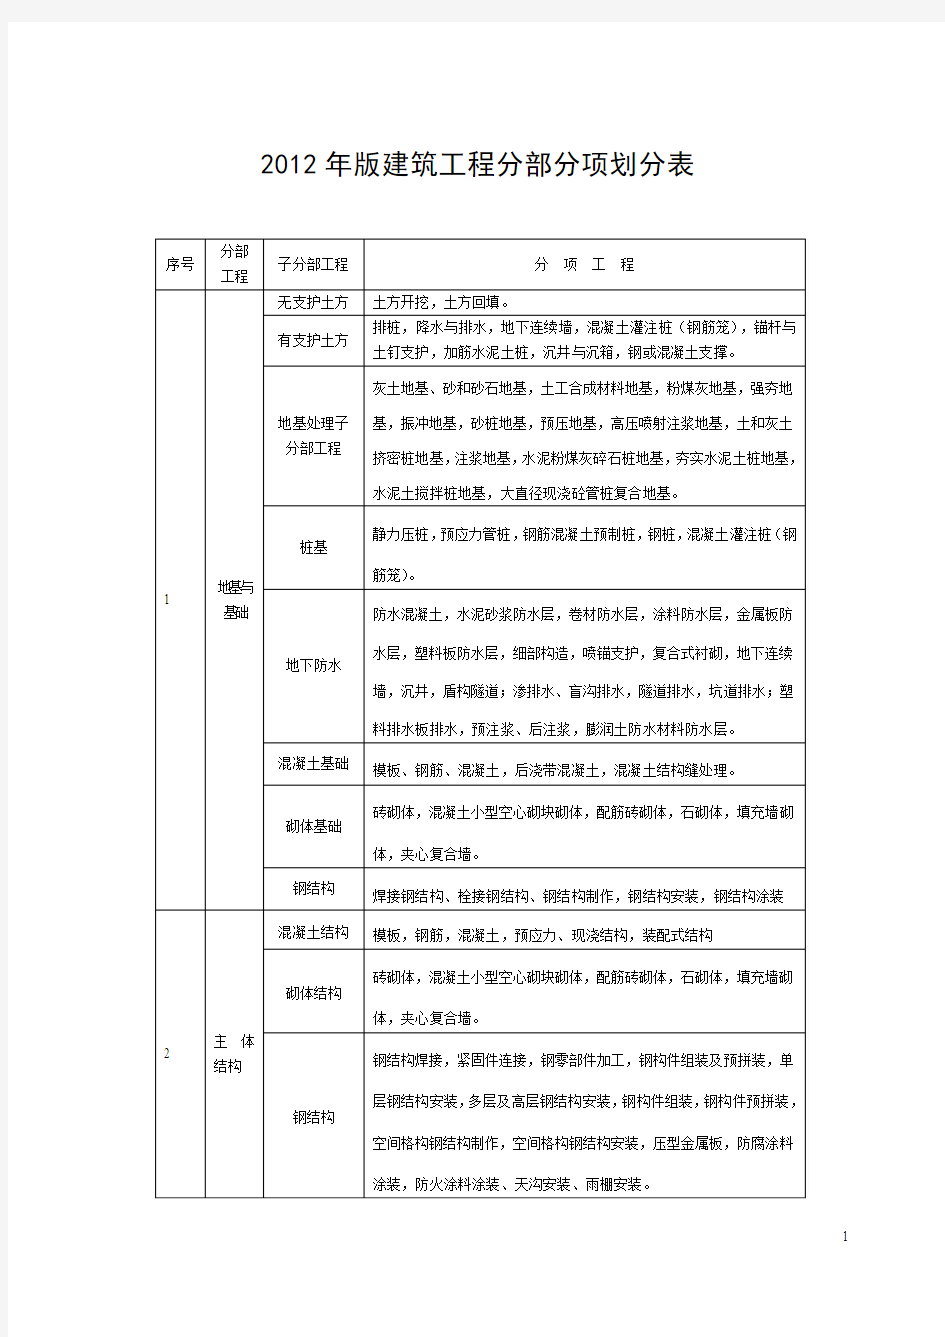 福建省建筑工程施工文件管理规程2012版施工分册